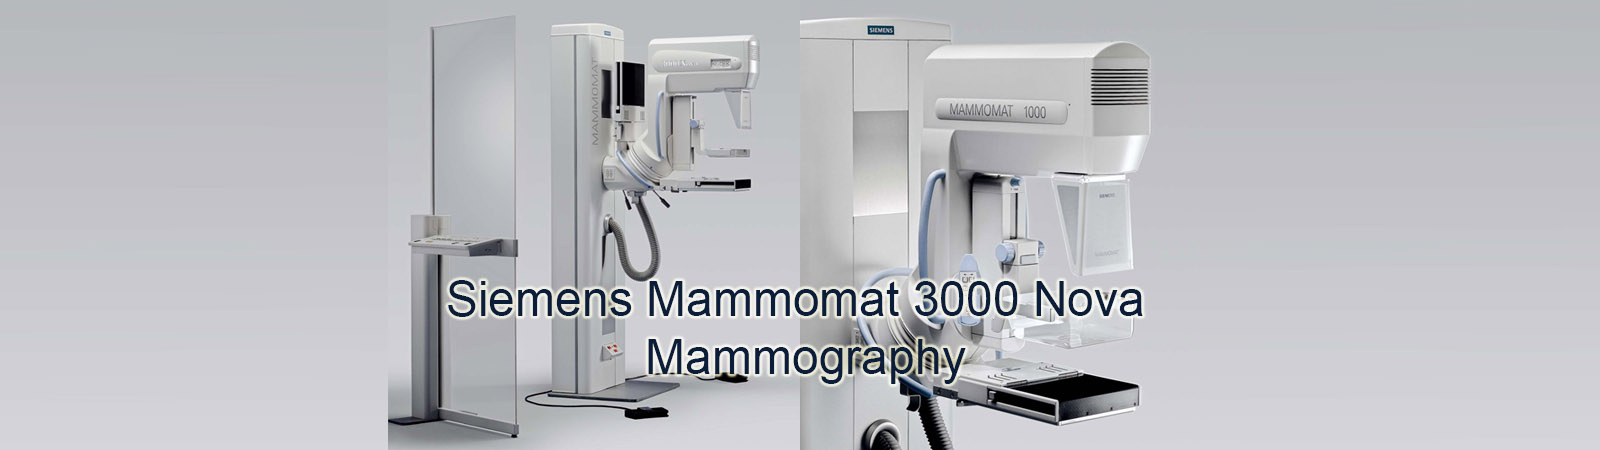 Refurbished Siemens MAMMOMAT 3000 Nova Mammography Machine